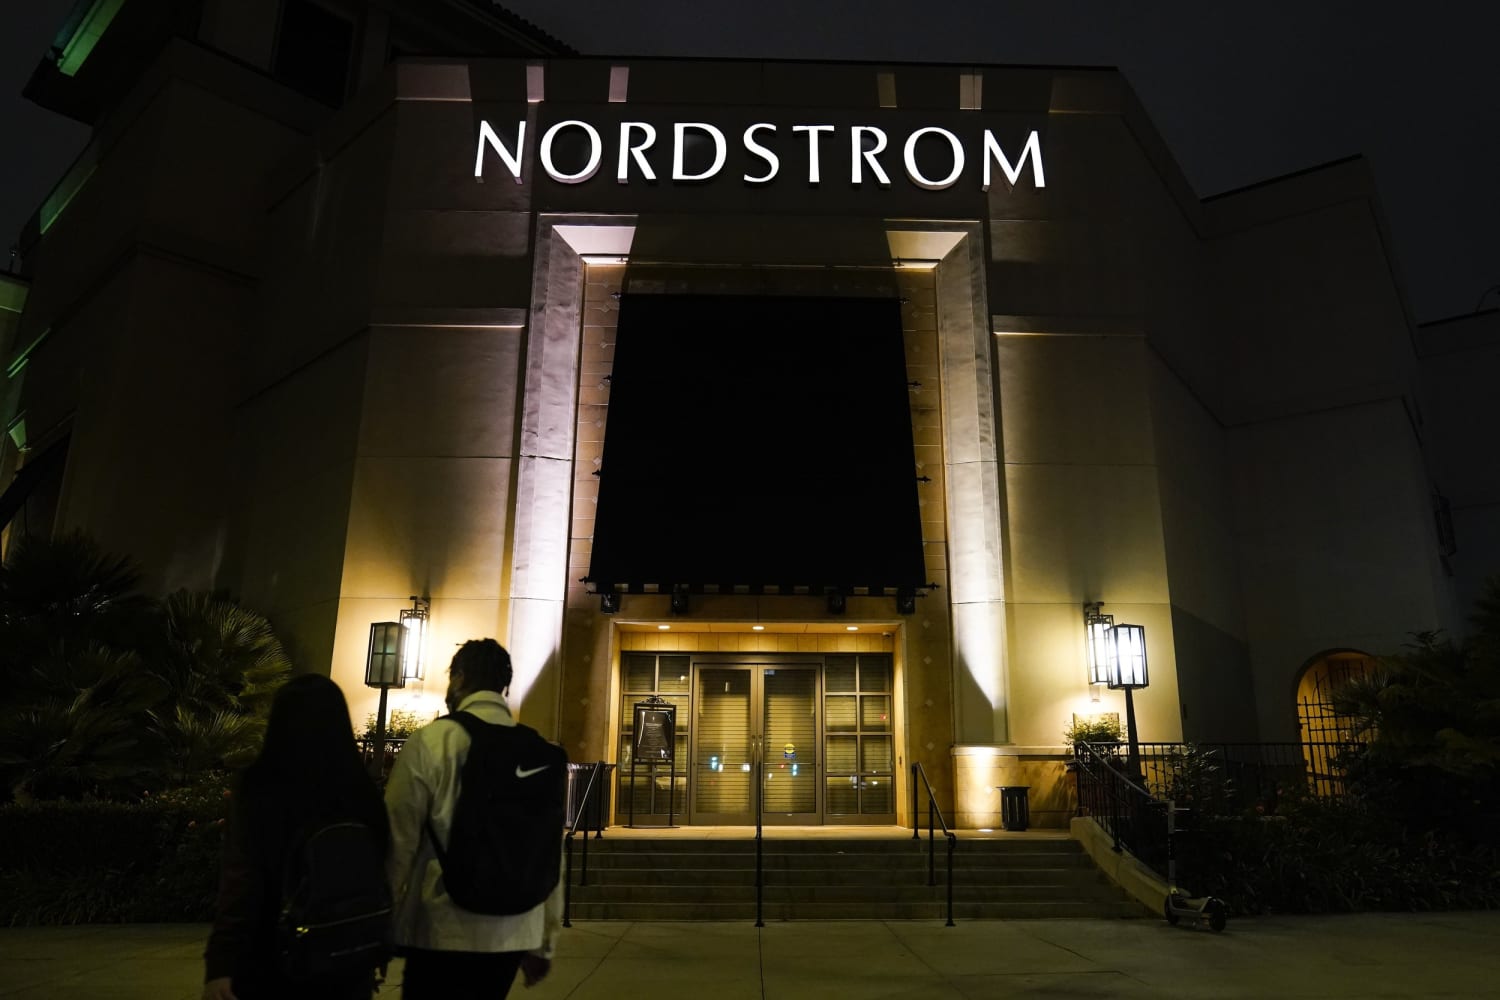 Bruce Nordstrom, qui a contribué au développement de la chaîne familiale de grands magasins, est décédé à l’âge de 90 ans.